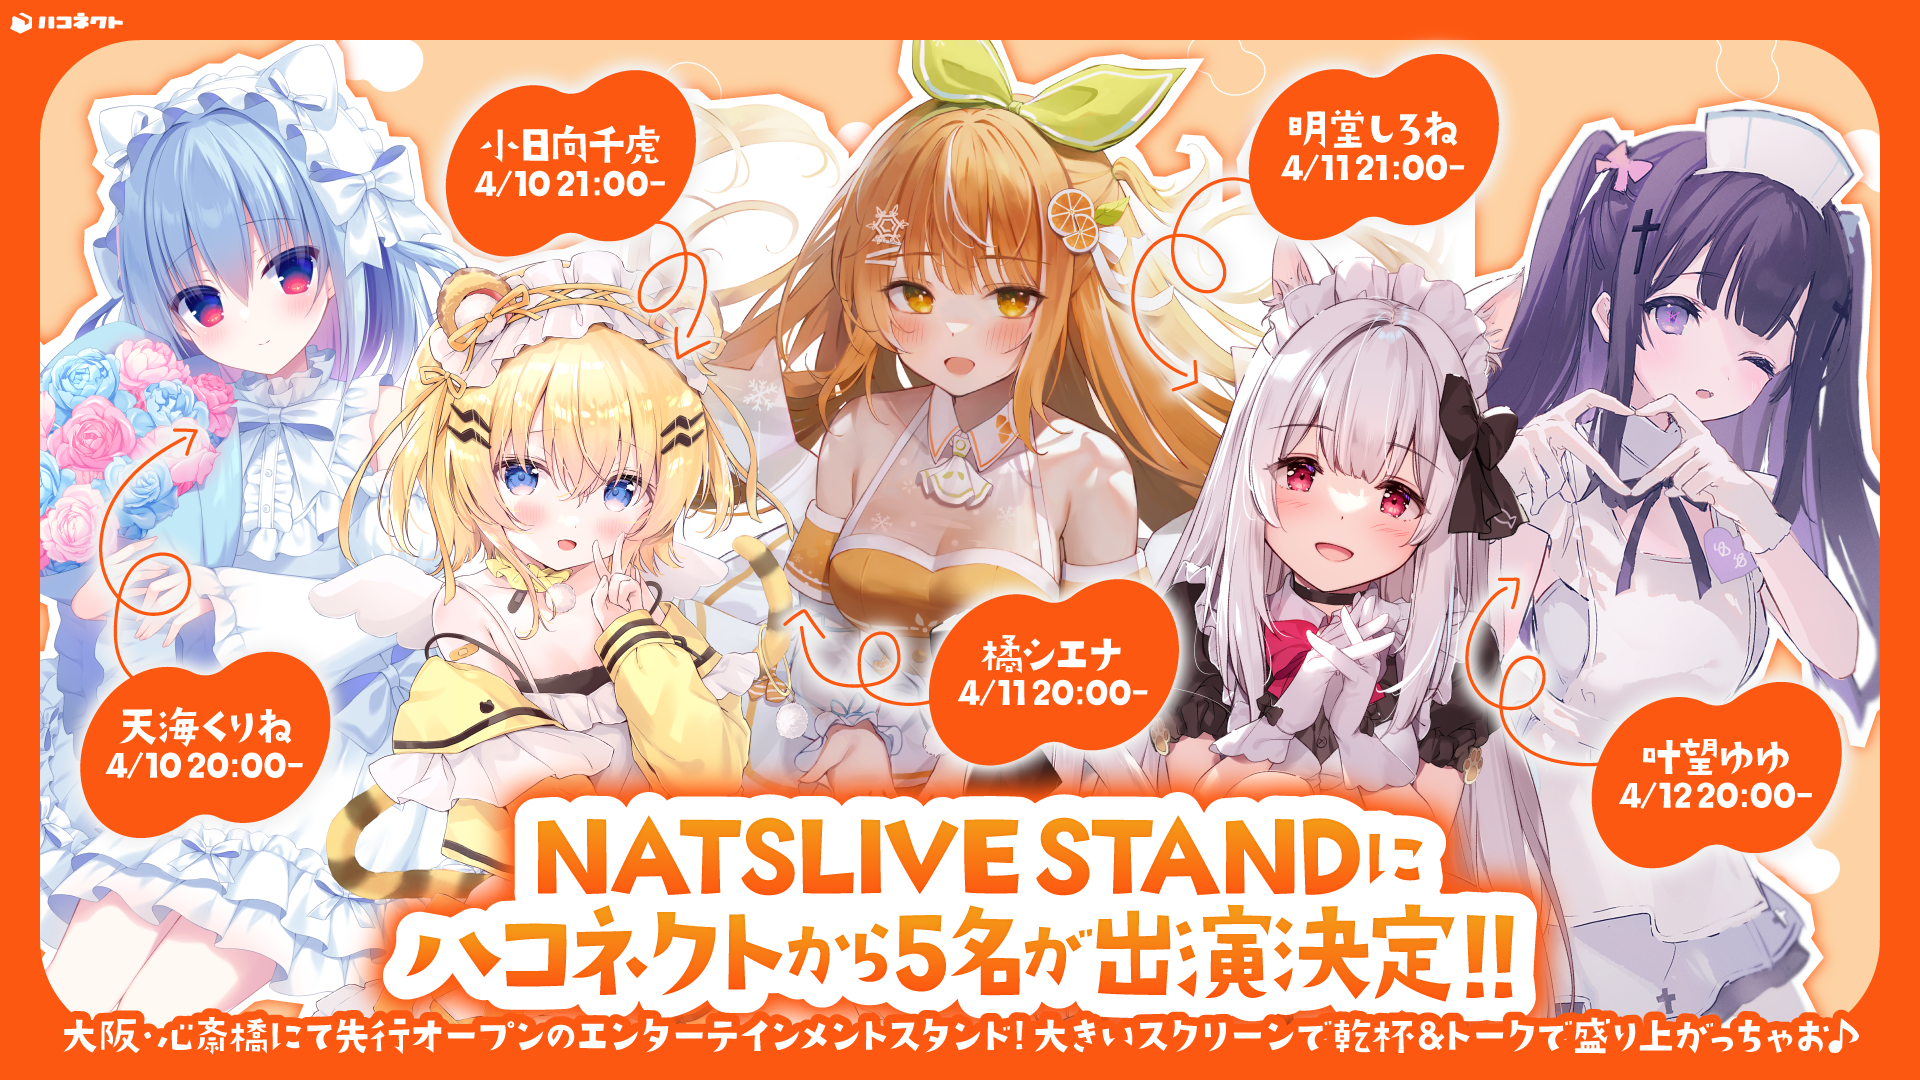 【イベント情報】NATSLIVE STANDにハコネクトから5名が出演決定！